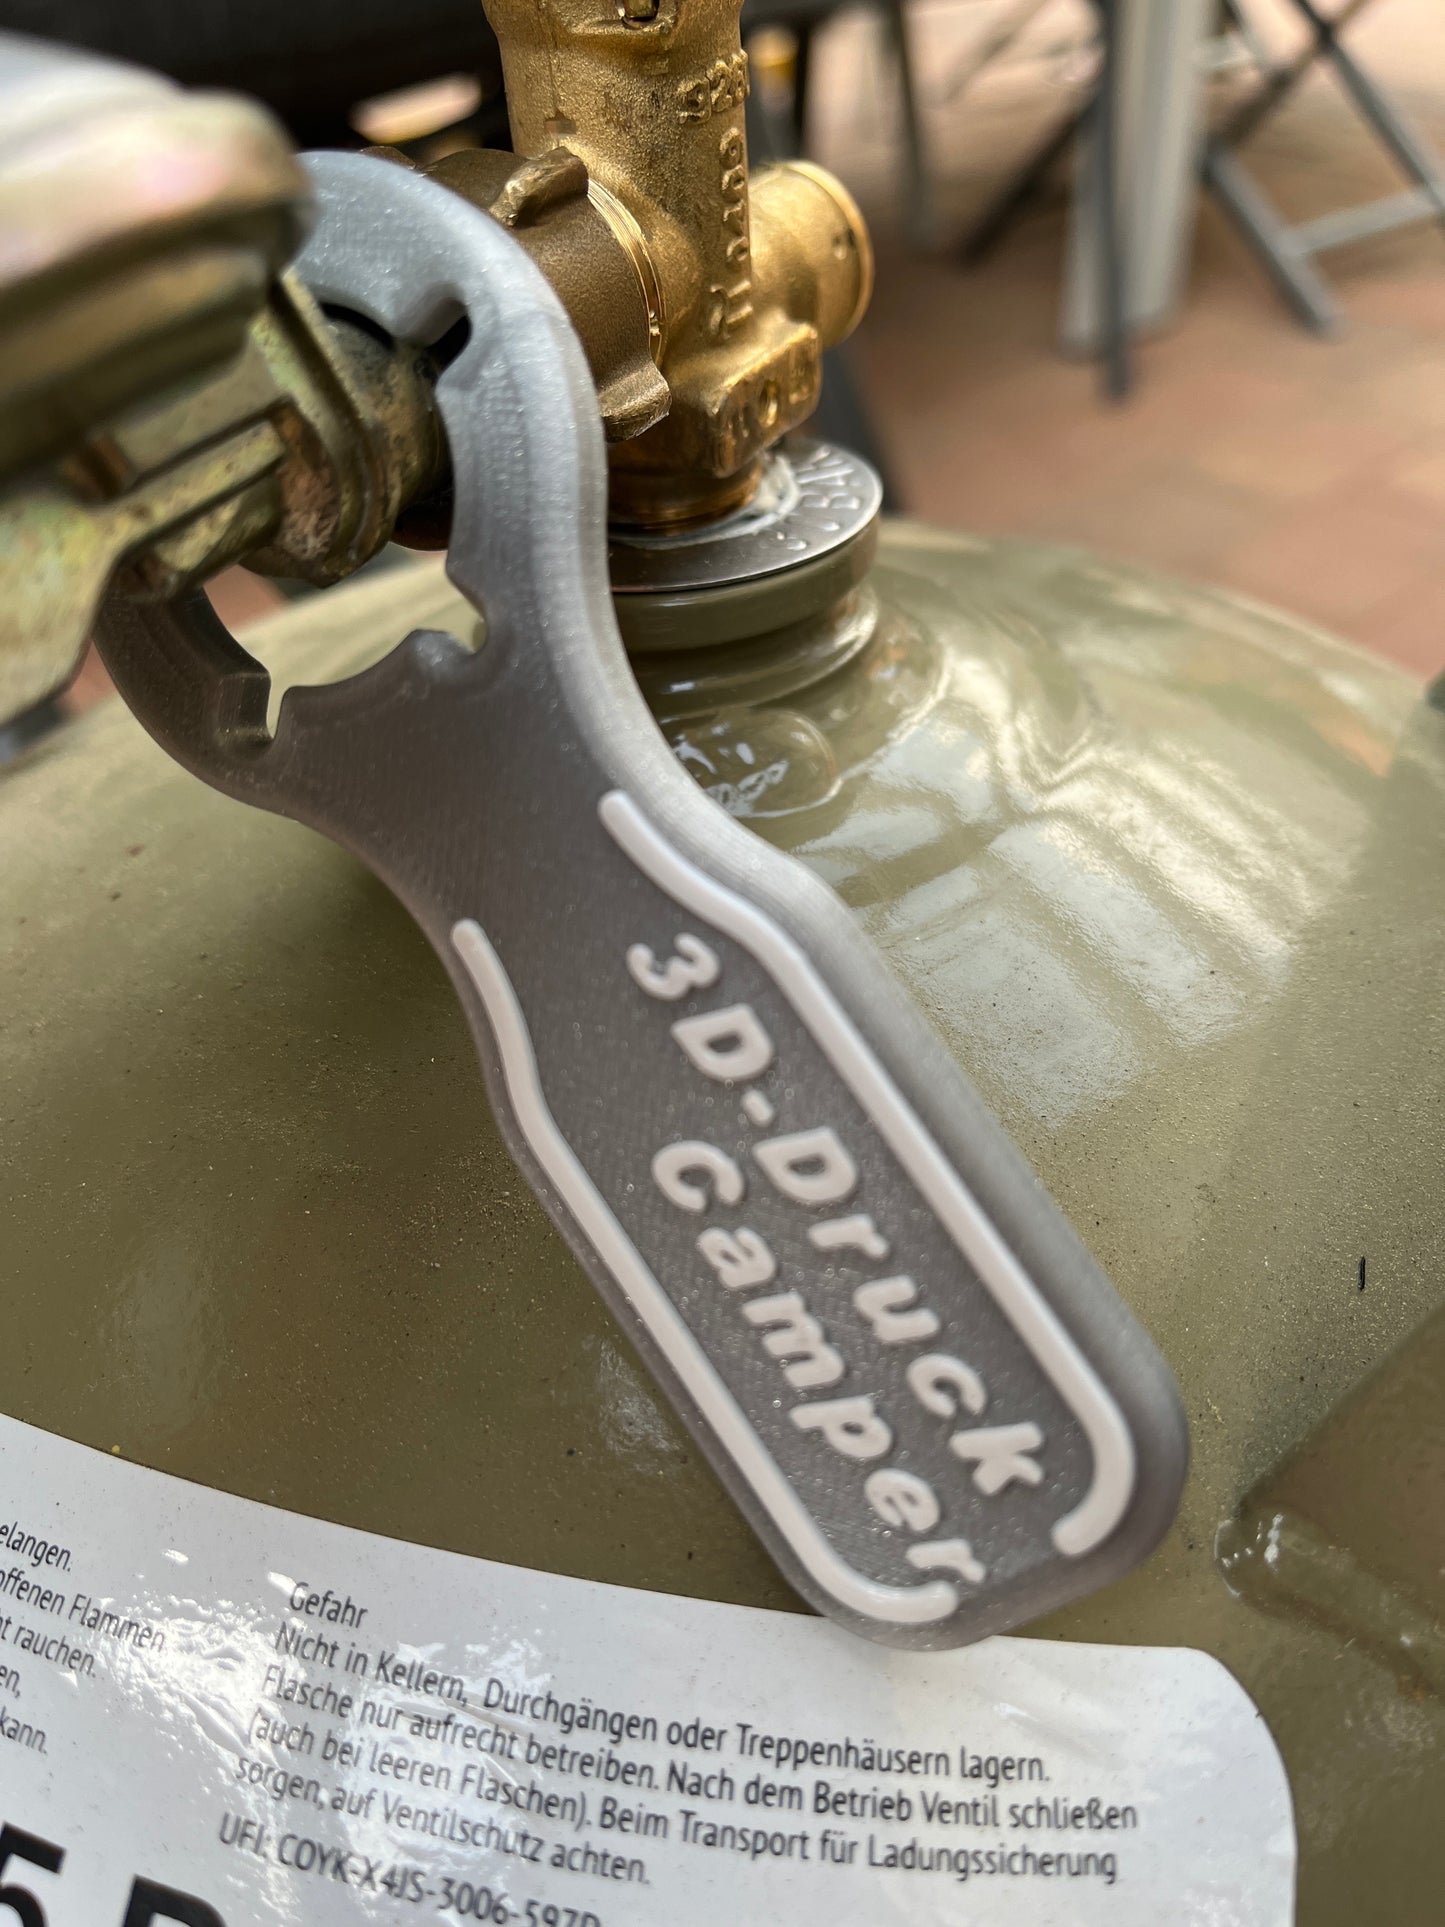 Gasflaschenschlüssel geschlossen, Schlüssel für Gasflasche in geschlossener Form, Gasflaschenschlüssel zum Überziehen